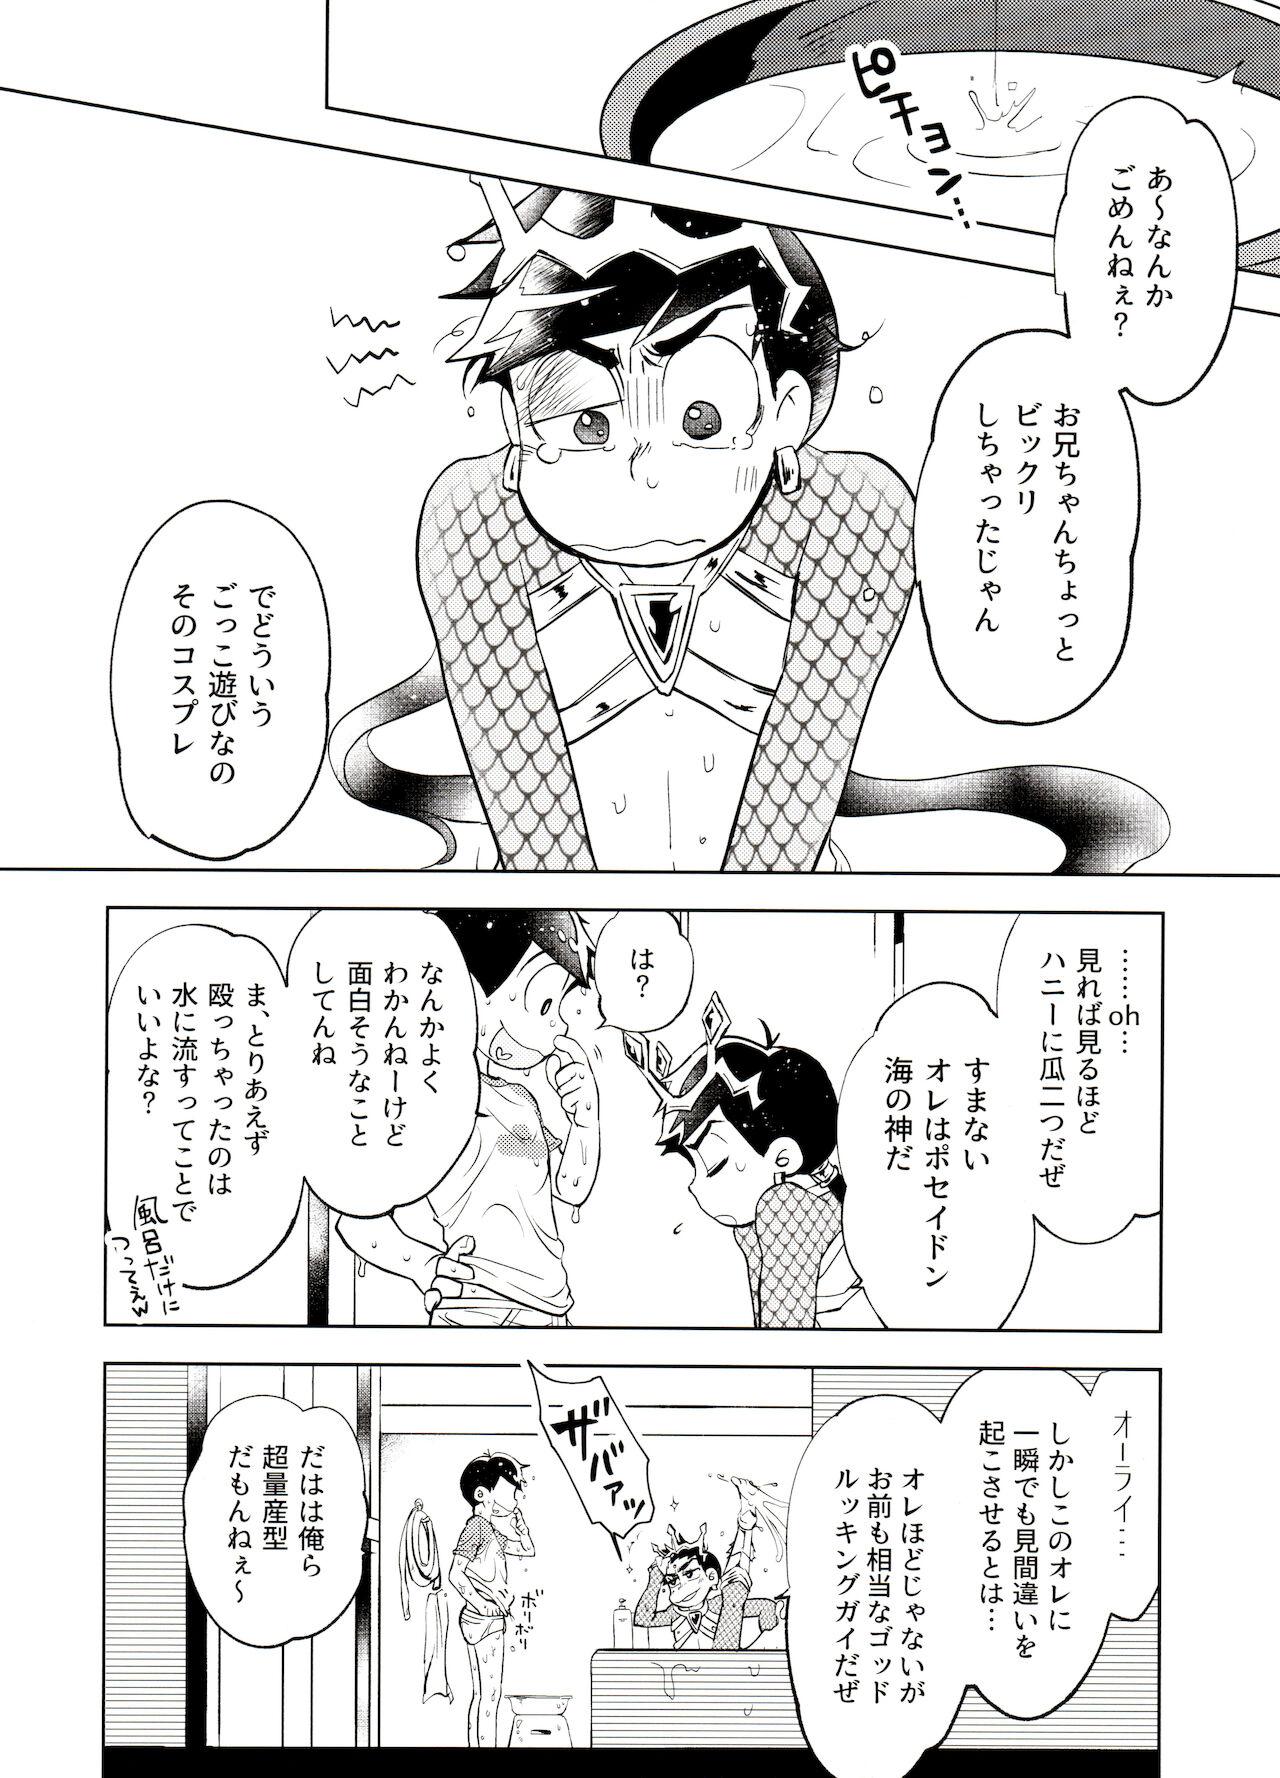 Petera Honjitsu wa Tokoro ni Yori Kaminari o Tomonatta Kami to Narudeshou. - Osomatsu-san Hotwife - Page 7